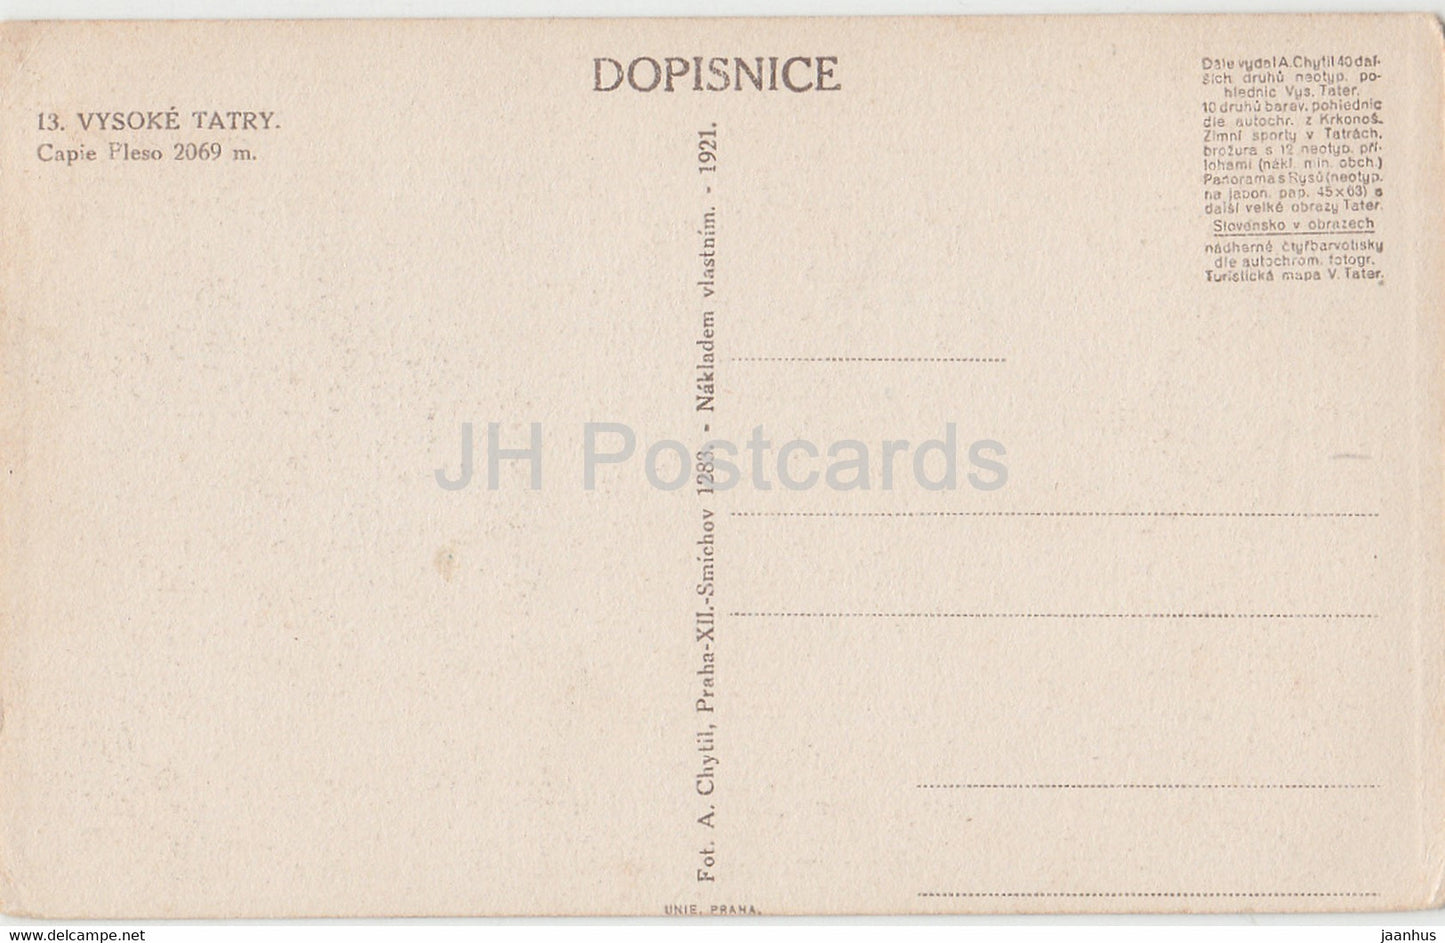 Vysoke Tatry - Capie Pleso 2069 m - alte Postkarte - 1921 - Slowakei - unbenutzt